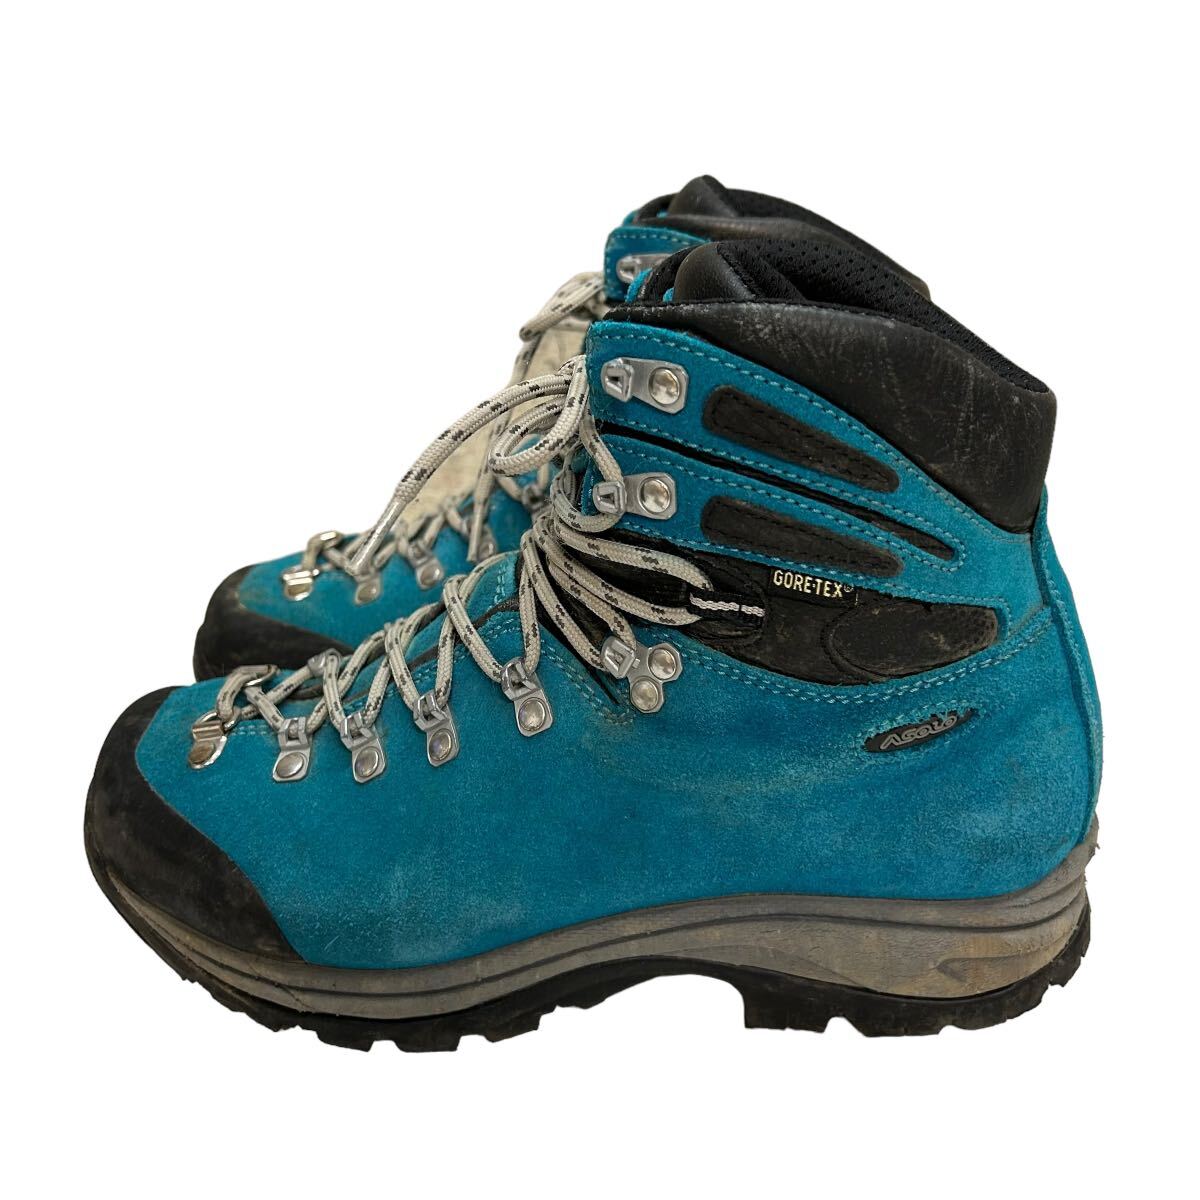 A518 ASOLO アゾロ トレッキングシューズ 登山靴 GORE-TEX ゴアテックス UK5.5 US7 約 24cm ブルーグリーン ブラック ビブラムソール